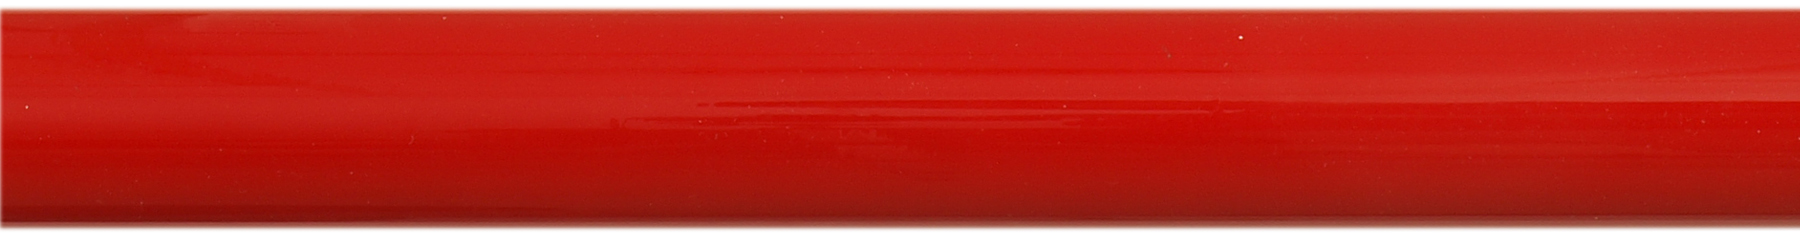 Intense Red Tube Sample